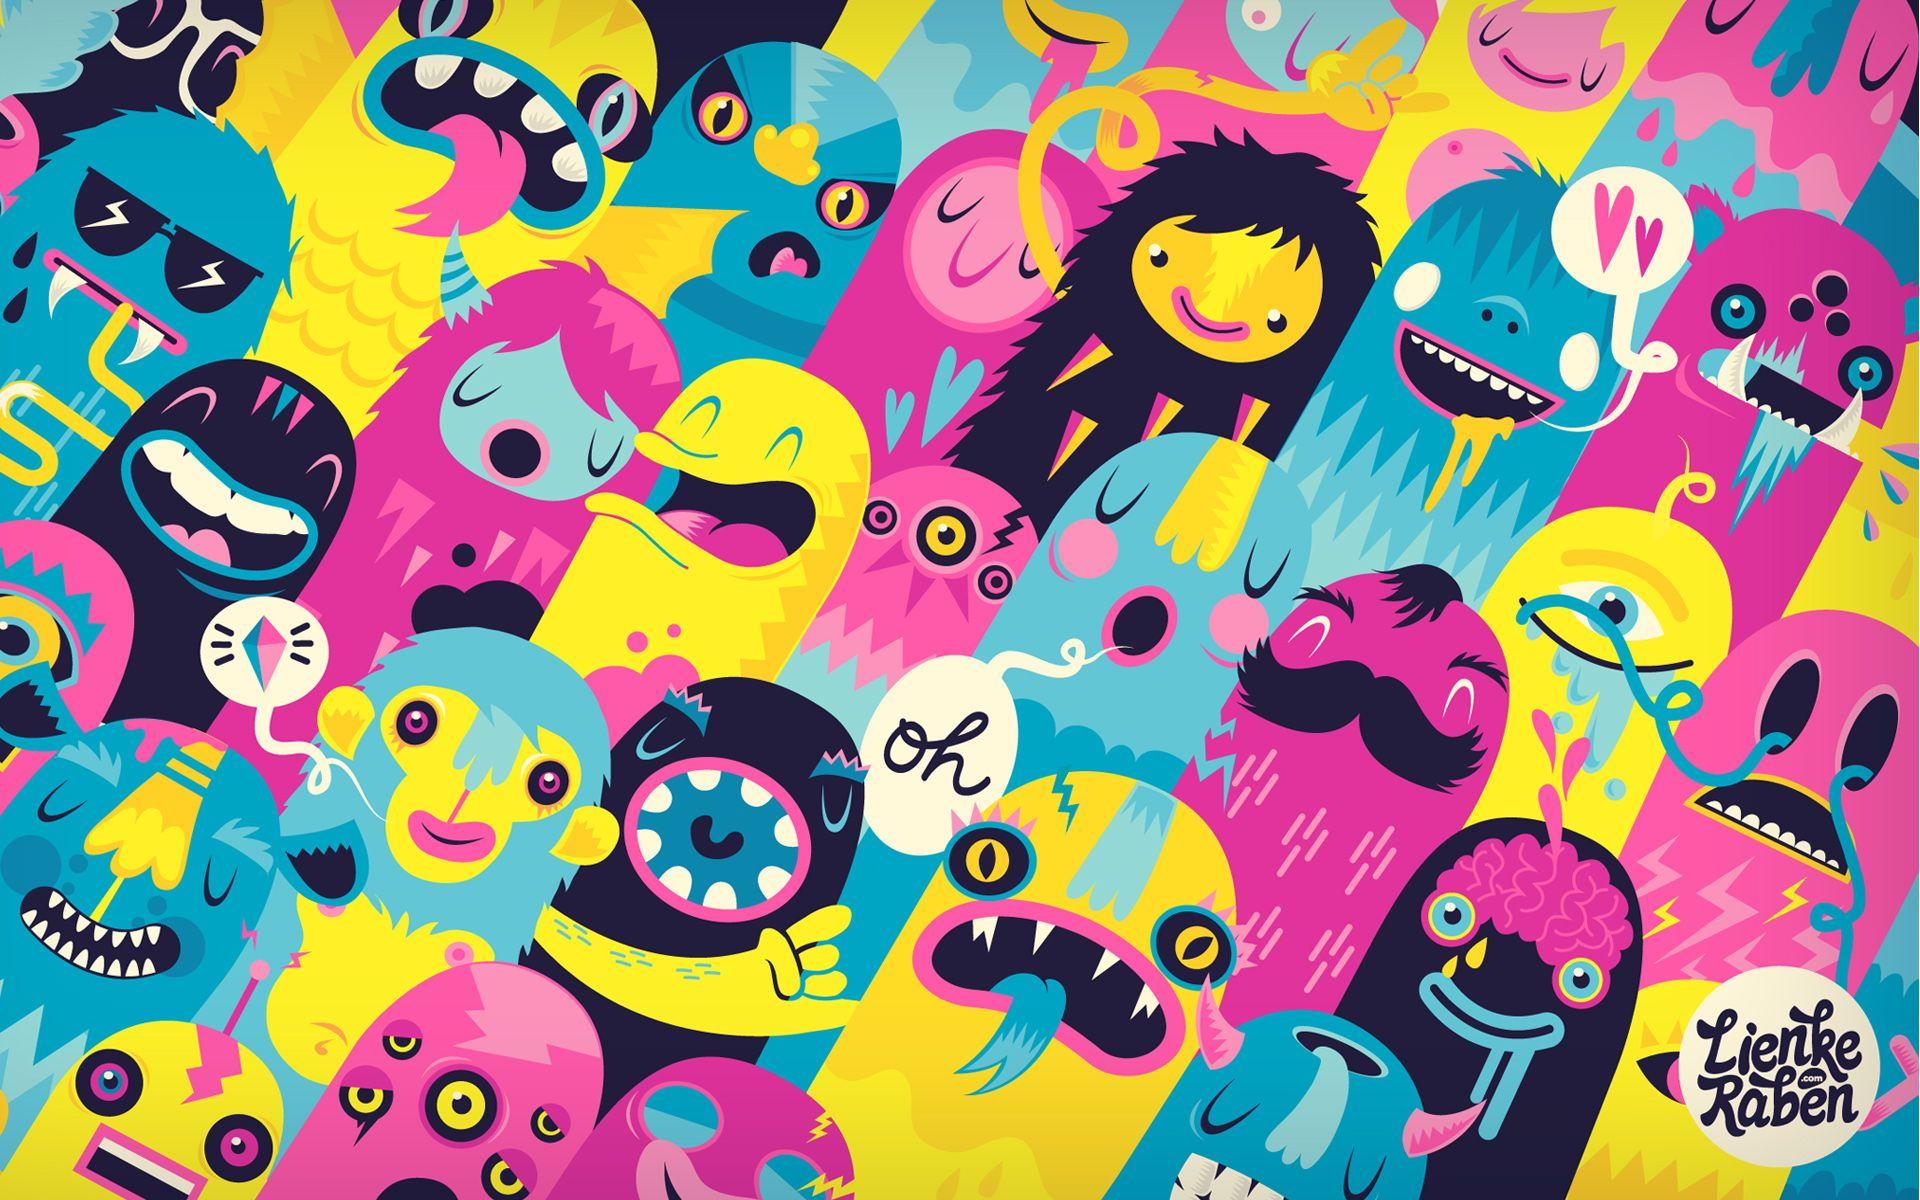 Monster Cute Wallpapers là bộ sưu tập hình nền dễ thương với chủ đề sinh vật huyền bí mà bạn không nên bỏ lỡ. Các hình ảnh đáng yêu với những con quái vật xinh xắn sẽ giúp bạn trở về tuổi thơ và mang lại nụ cười cho bạn mỗi khi mở máy tính. Hãy xem ngay để khám phá!